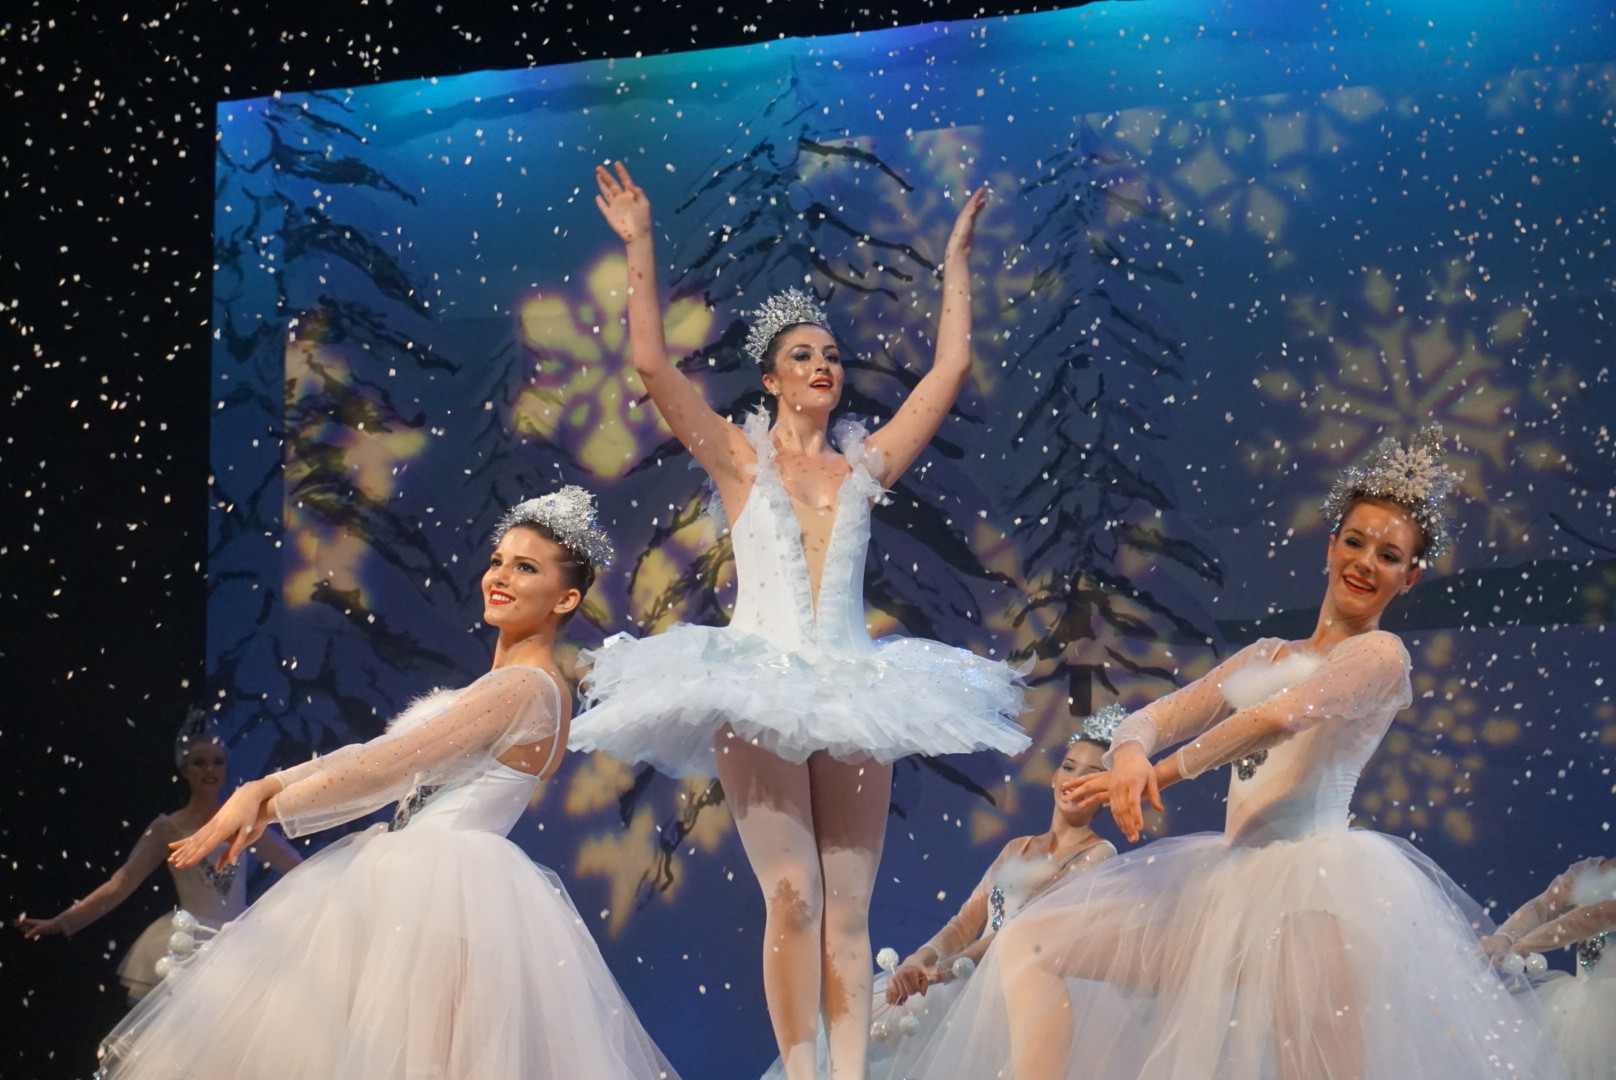 Ally Davis (center) dances as the Snow Queen between Alyssa Billingsley (left) and Hallie Murta